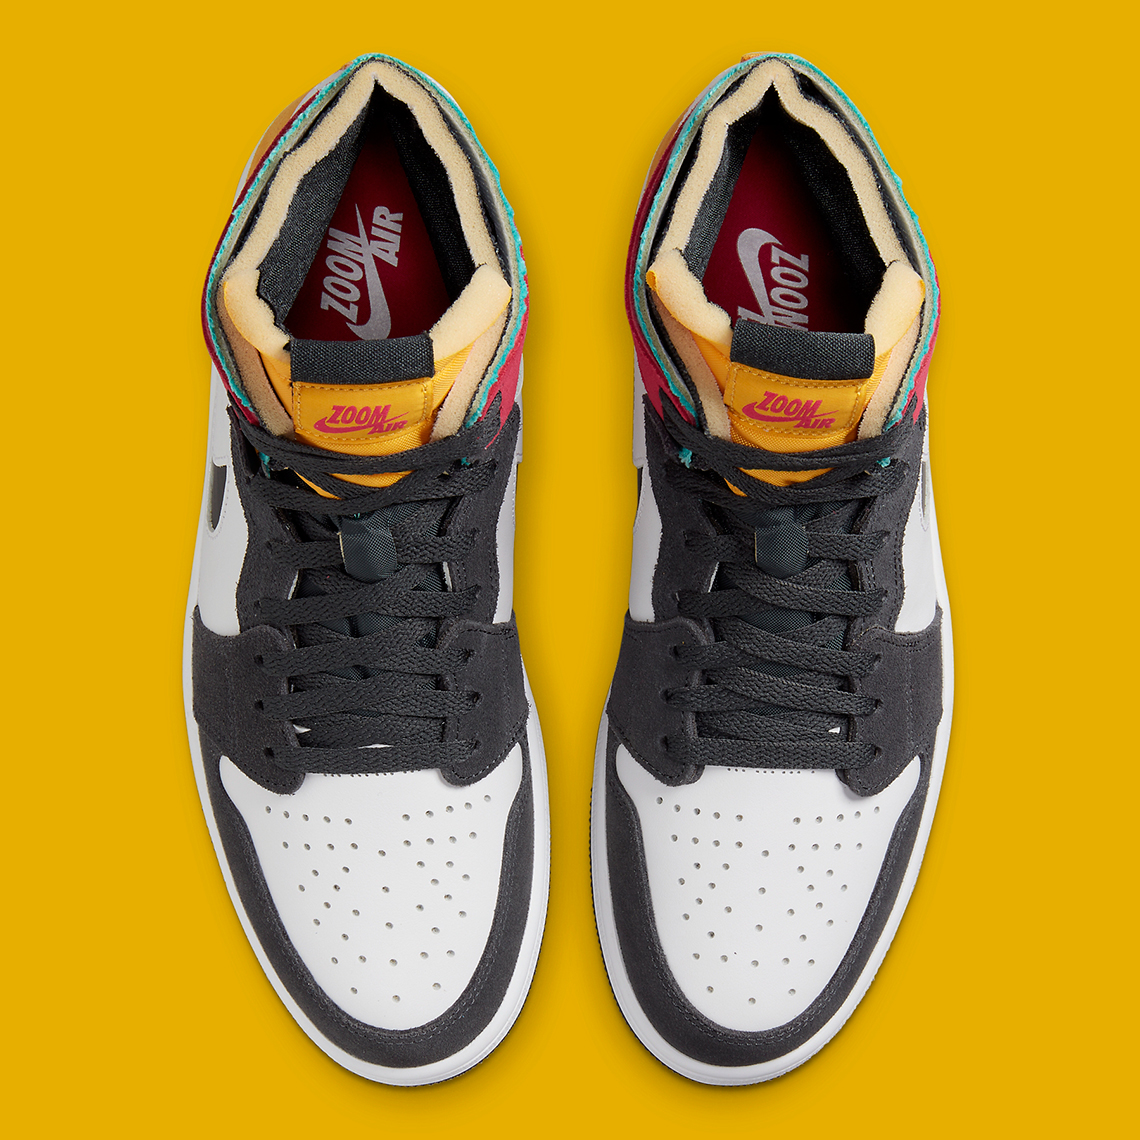 Nike Jordan Crossbody logo Zoom Cmft Ct0978 016 Release Date 1